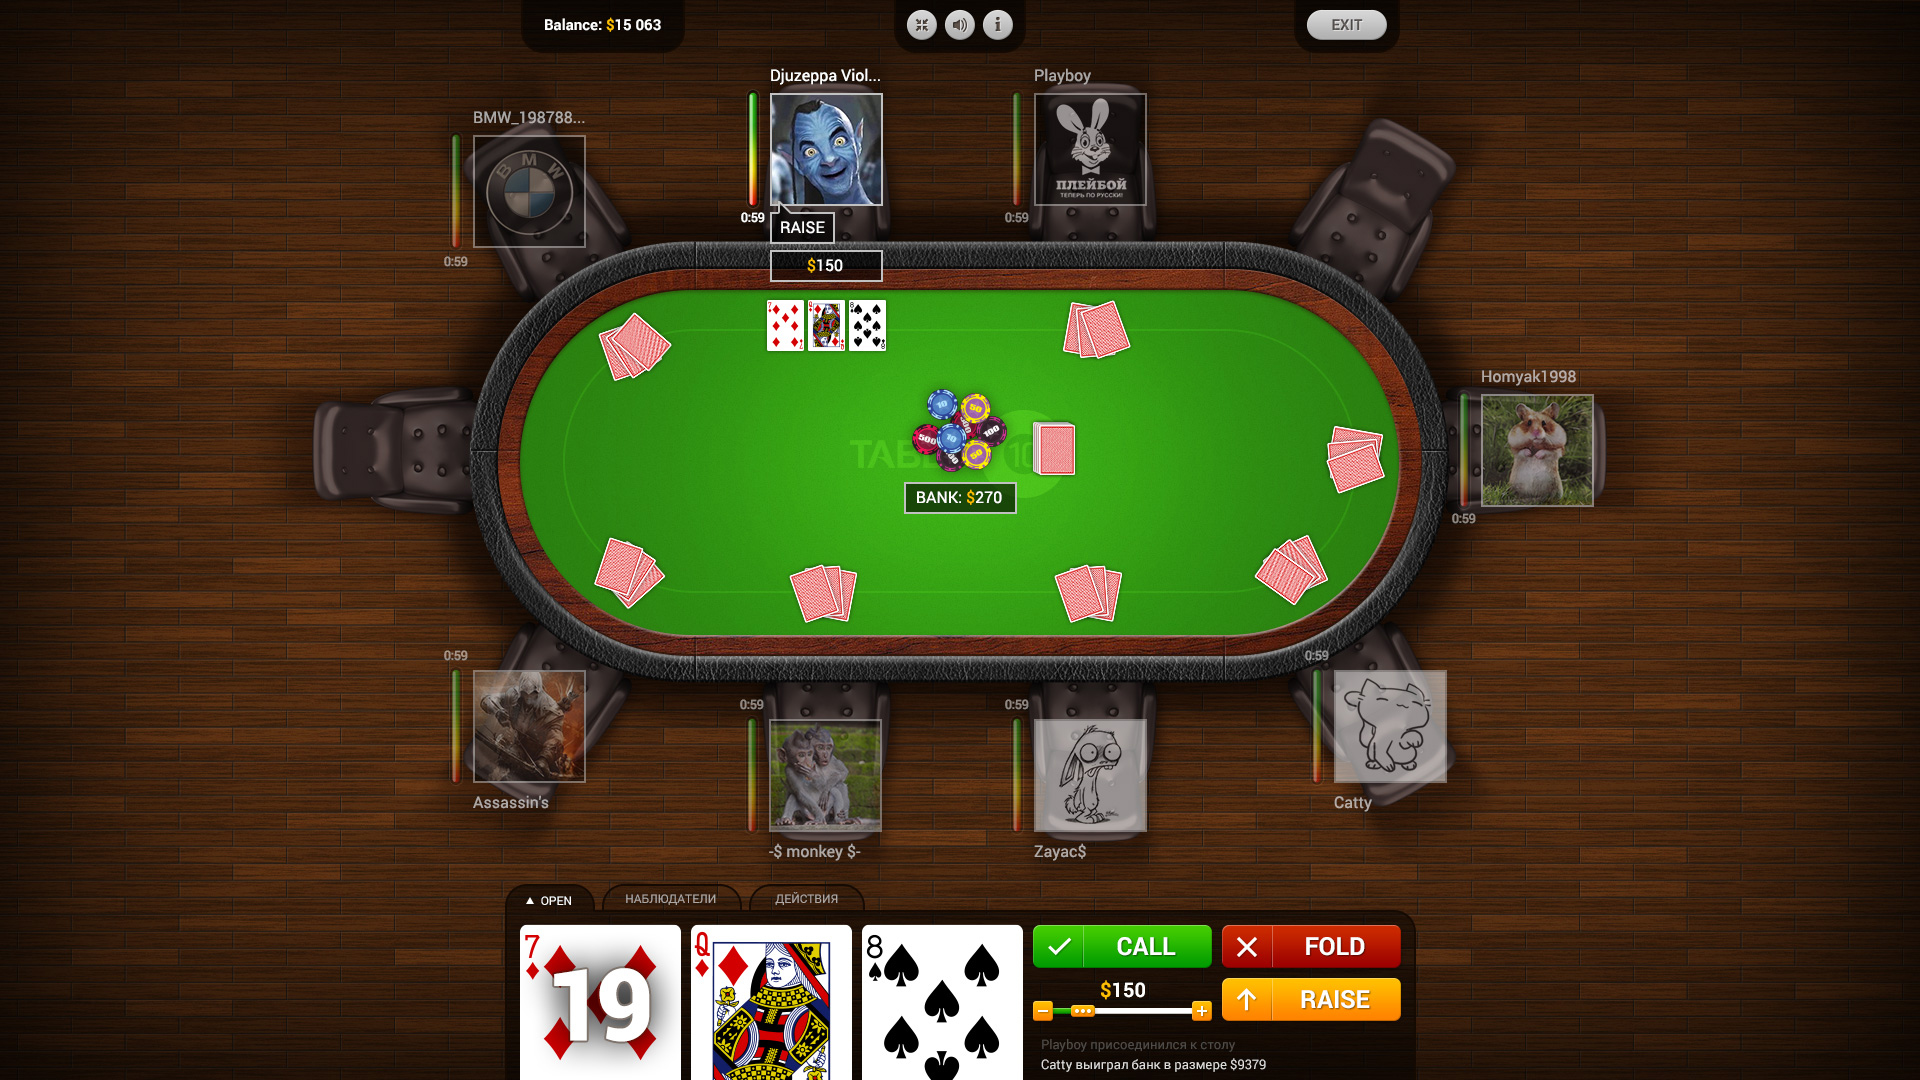 Гранд казино играть онлайн